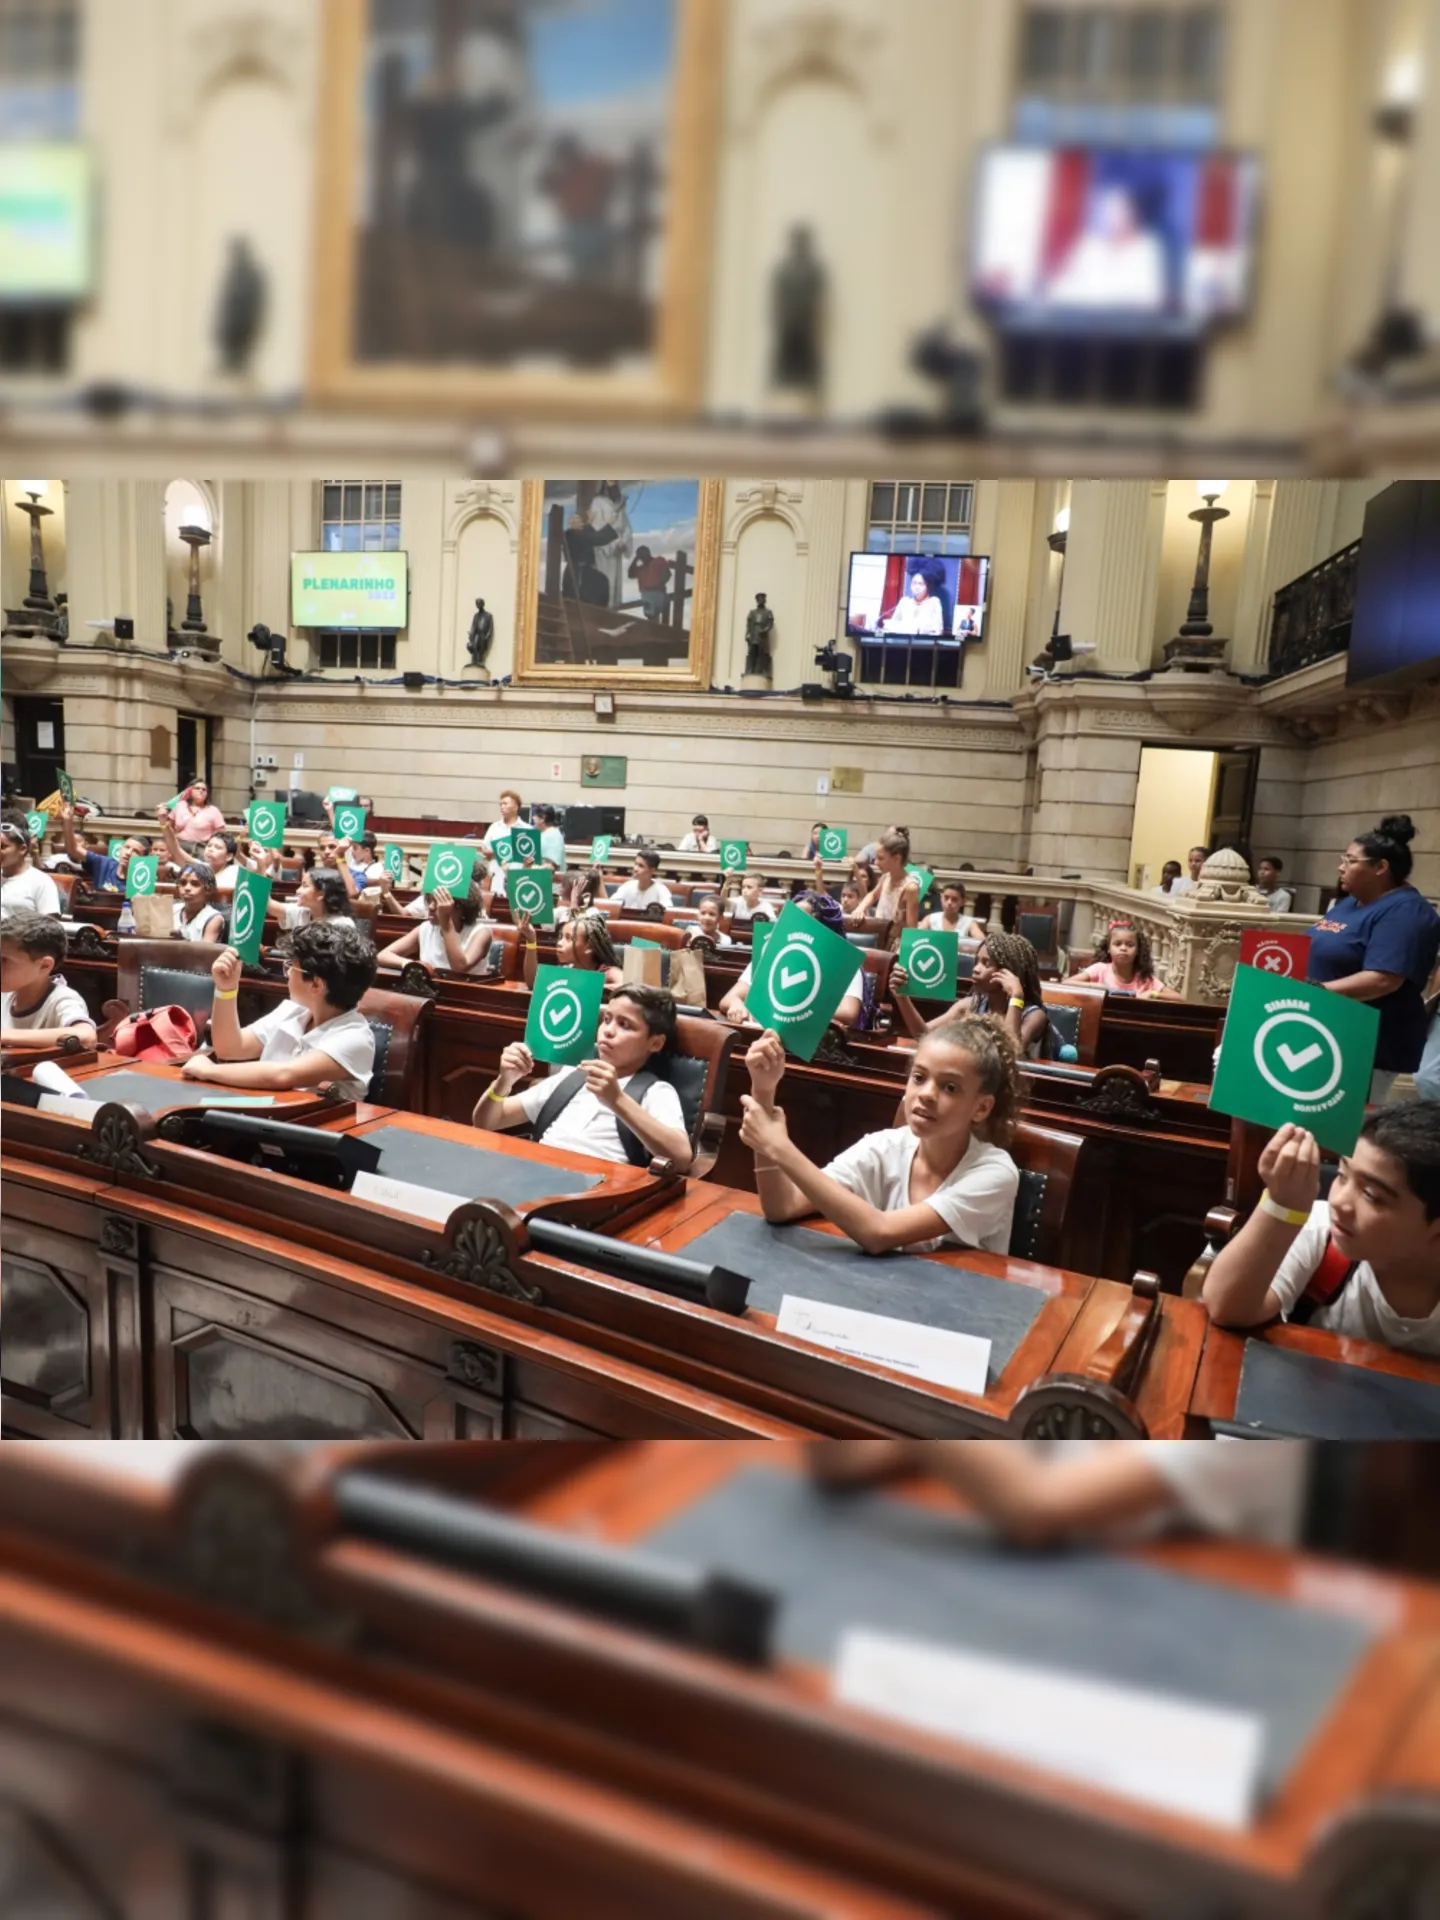 Participantes foram convidados a ocupar as cadeiras dos vereadores, para elaborar projetos de lei, discutir propostas e votá-las, simulando uma sessão legislativa